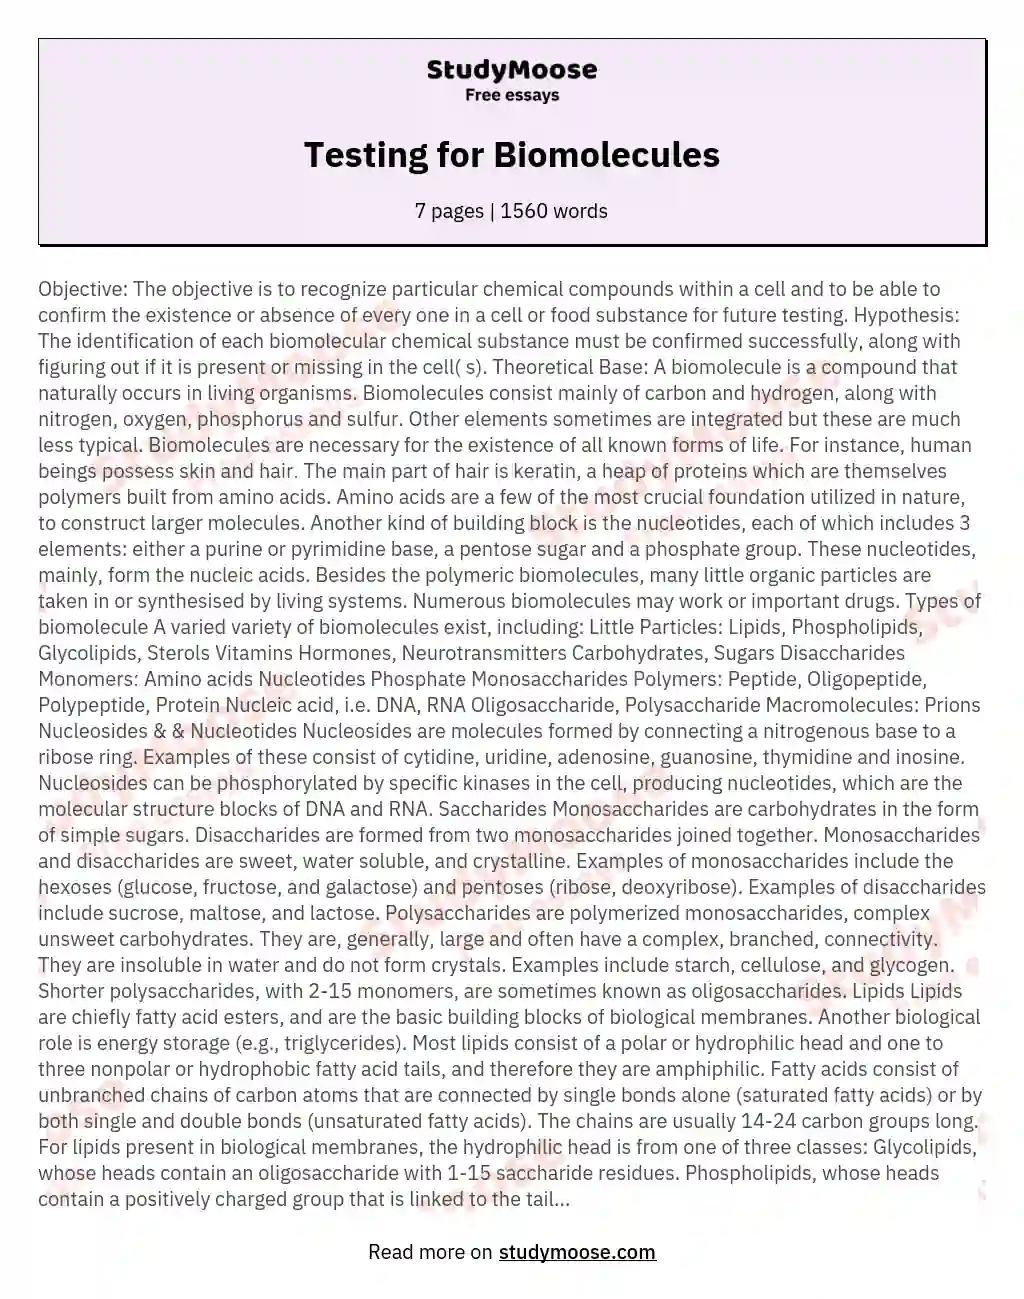 Testing for Biomolecules essay